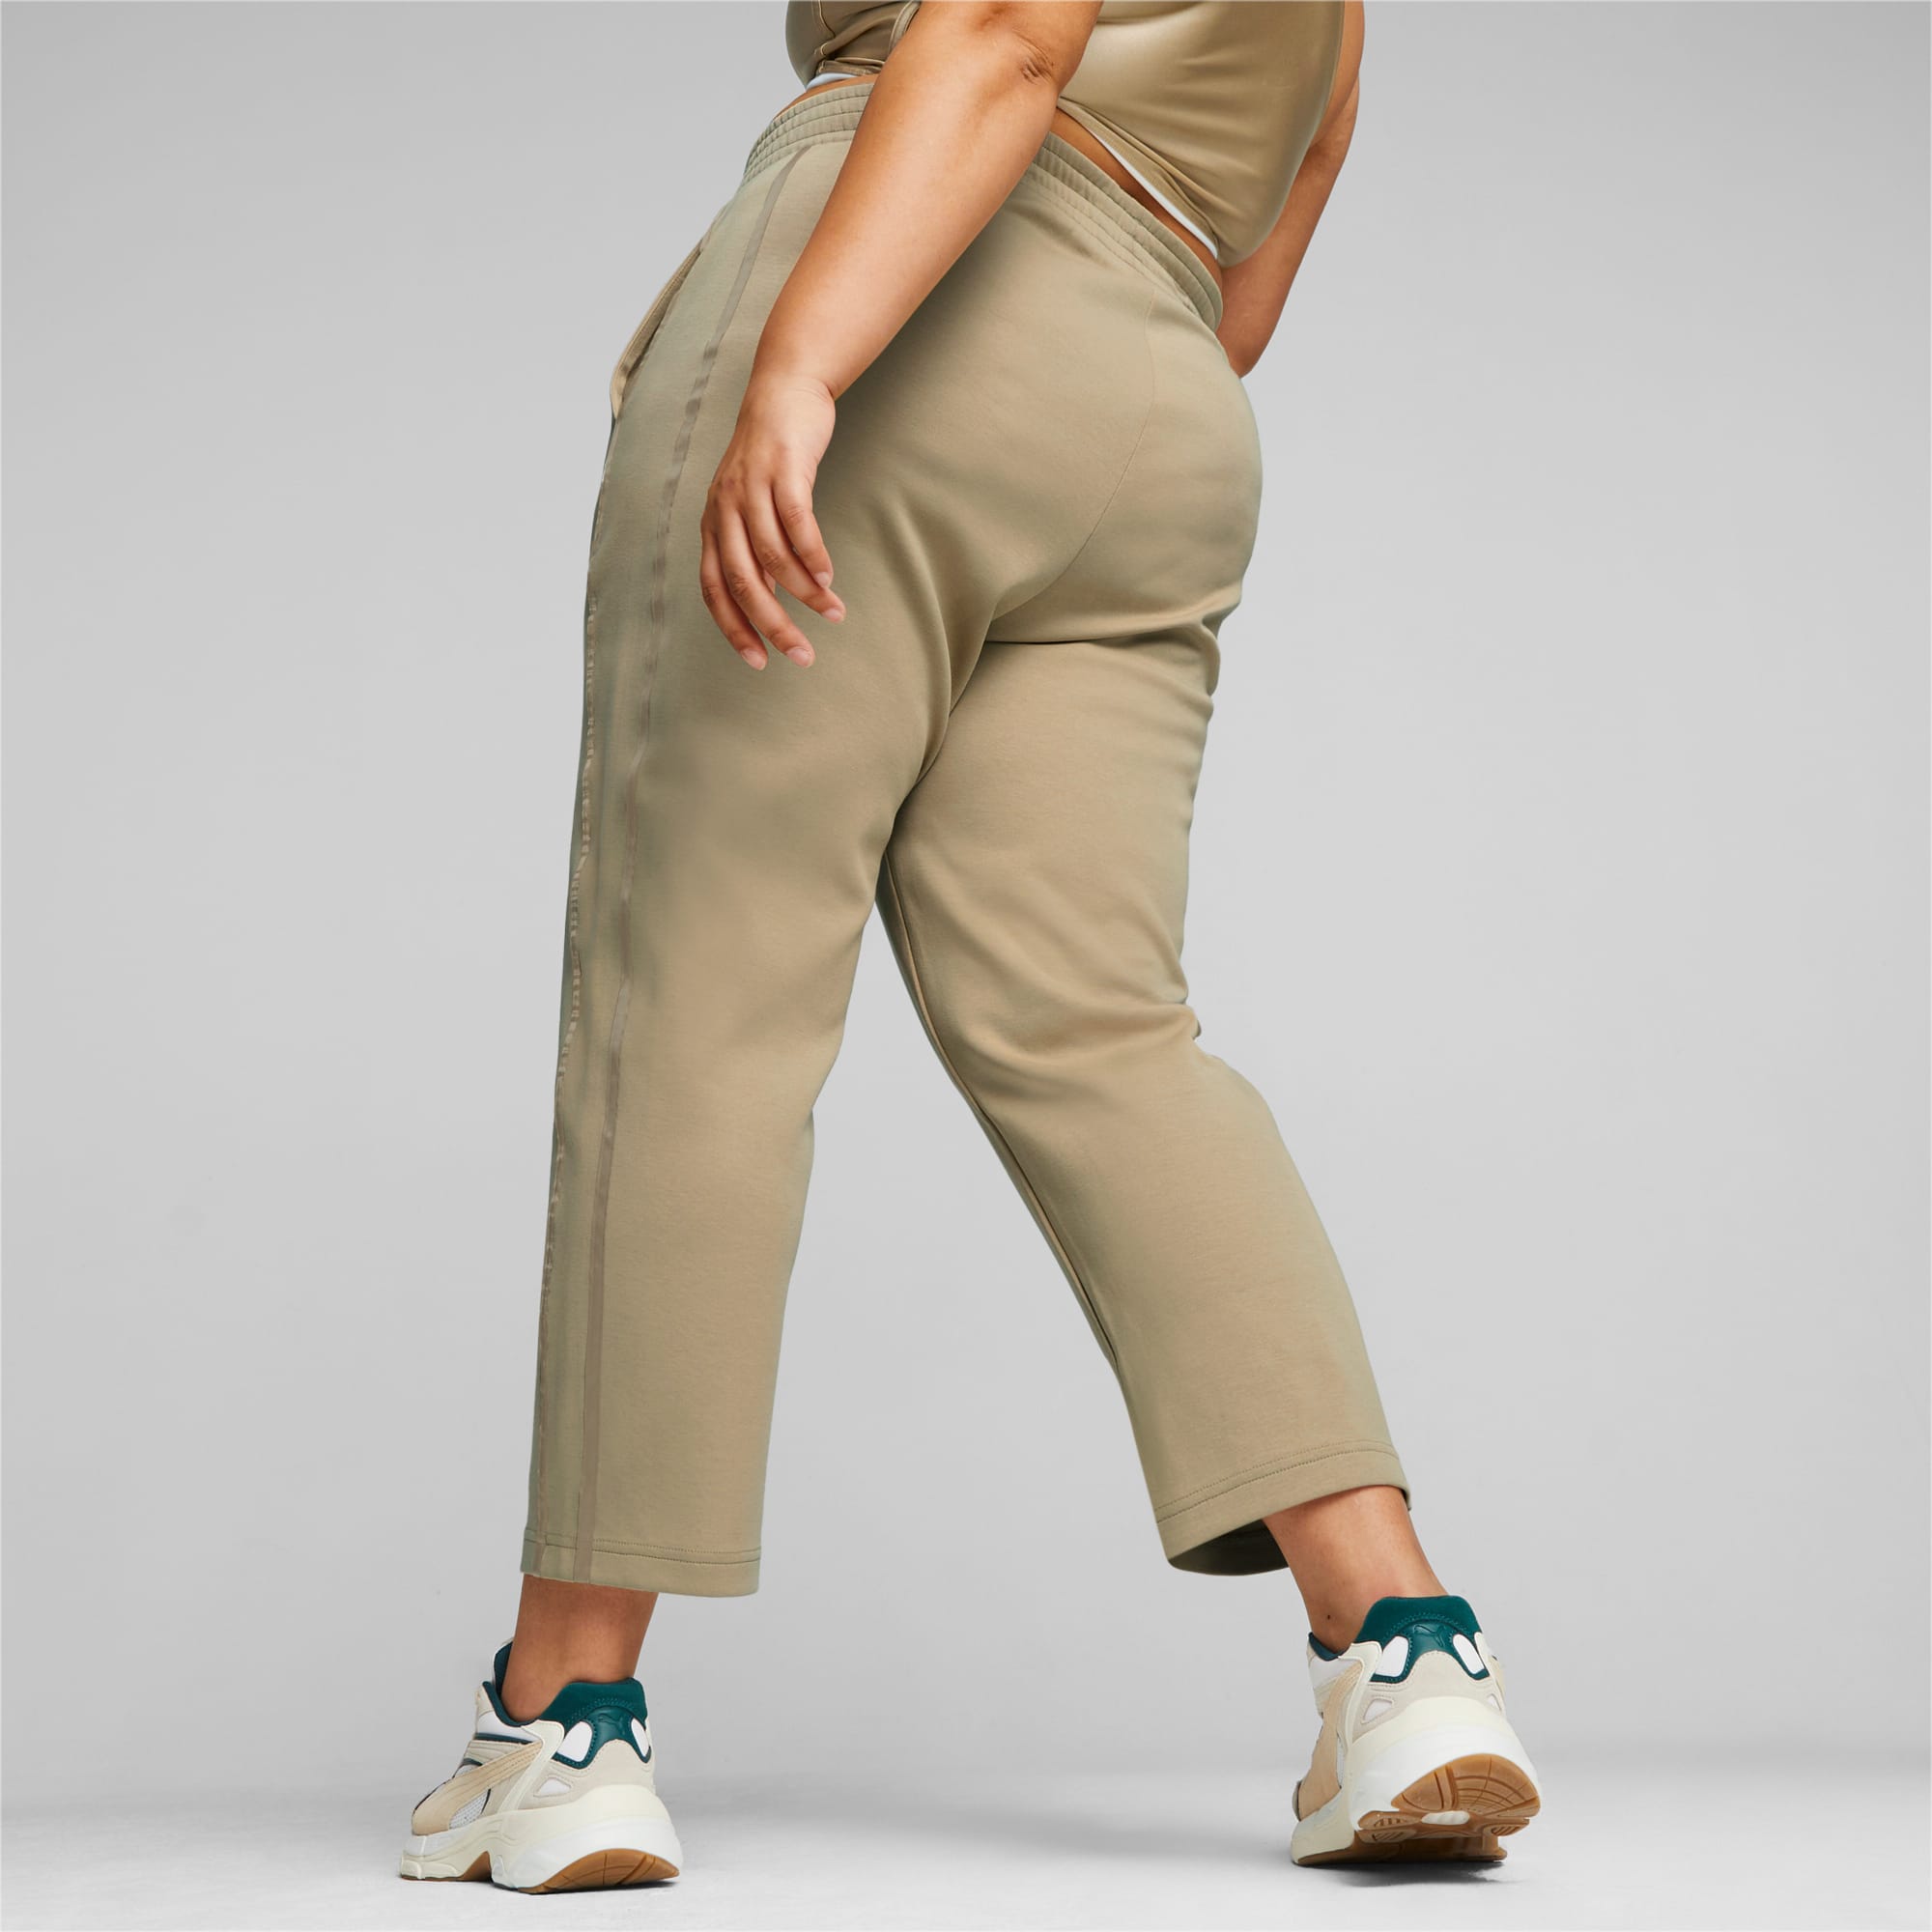 Pantaloni T7 A Vita Alta Da Donna, Beige/Altro